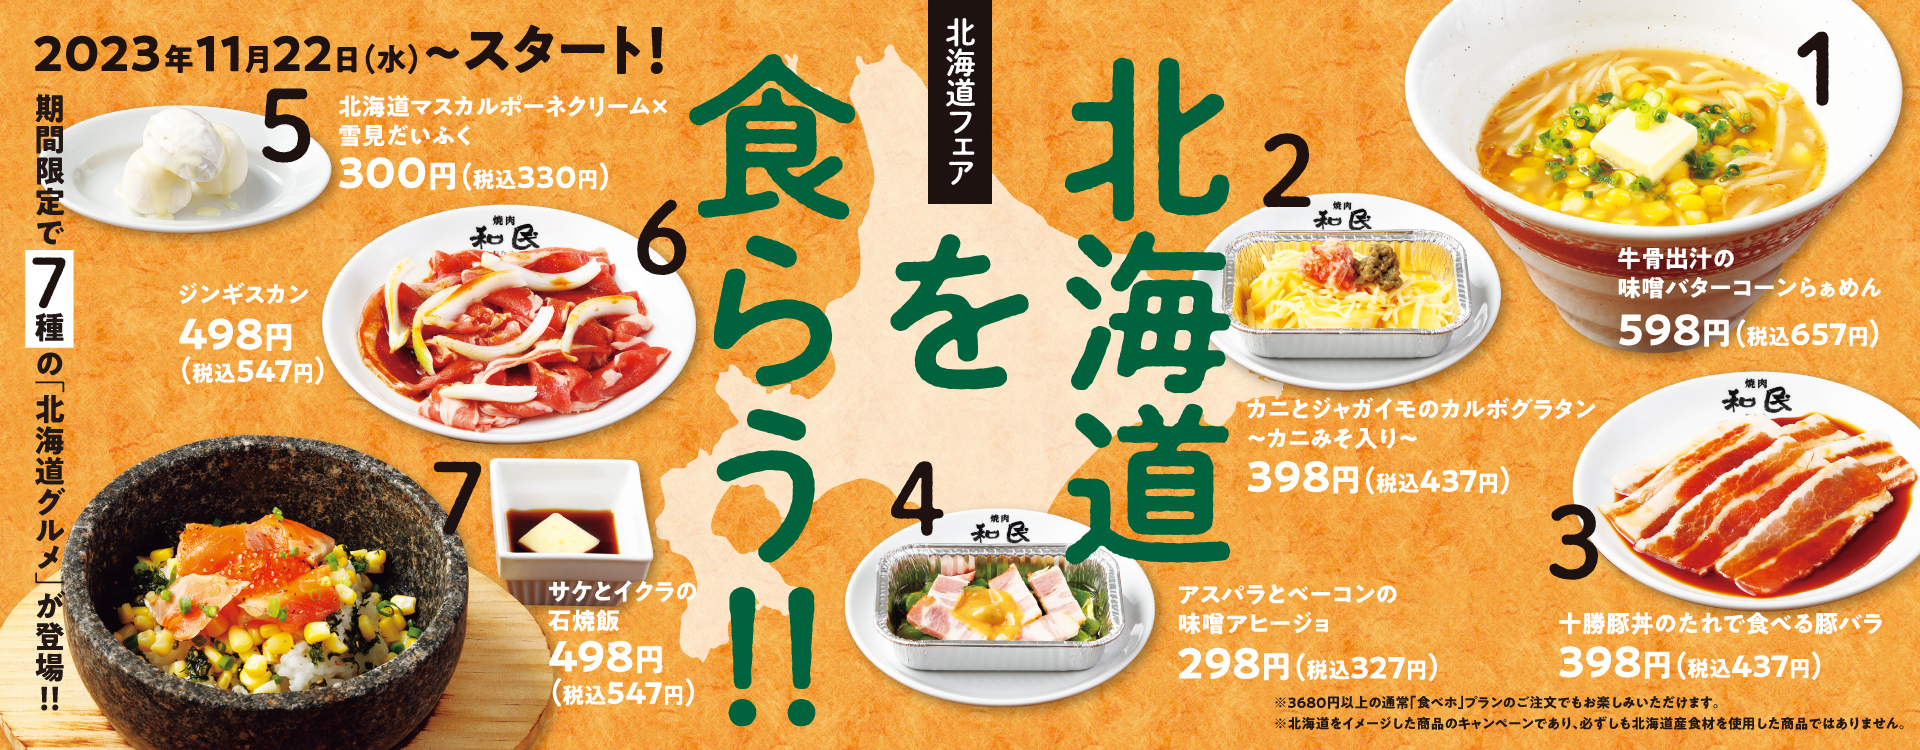 7種の北海道グルメメニューが新登場‼「北海道フェア」で北海道を食らう‼